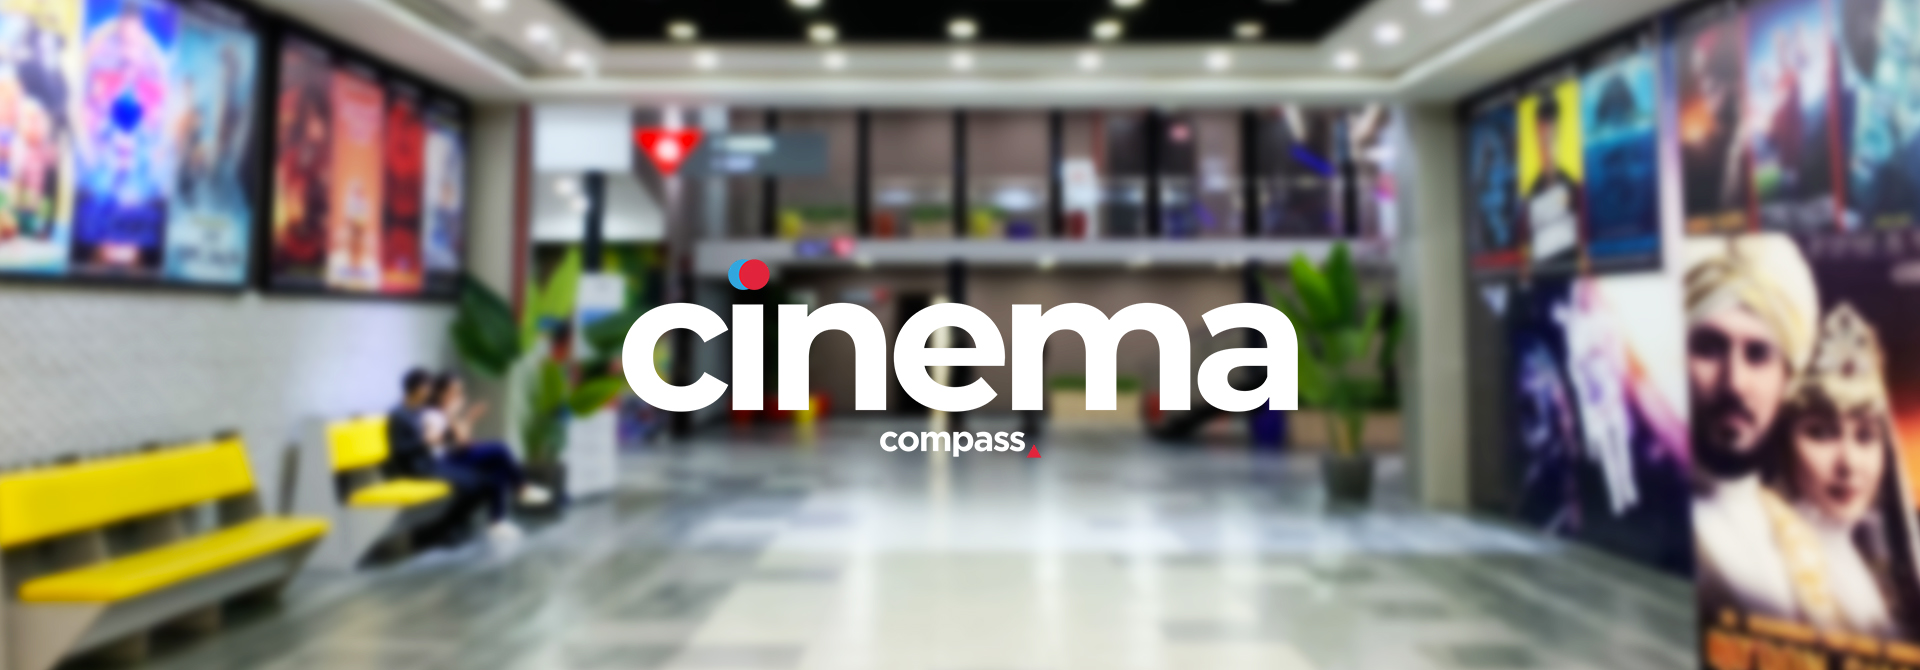 Кинотеатр «Compass Cinema - Малый Зал №2» в Ташкенте - расписание фильмов, афиша кино, адрес, телефоны и другие контакты